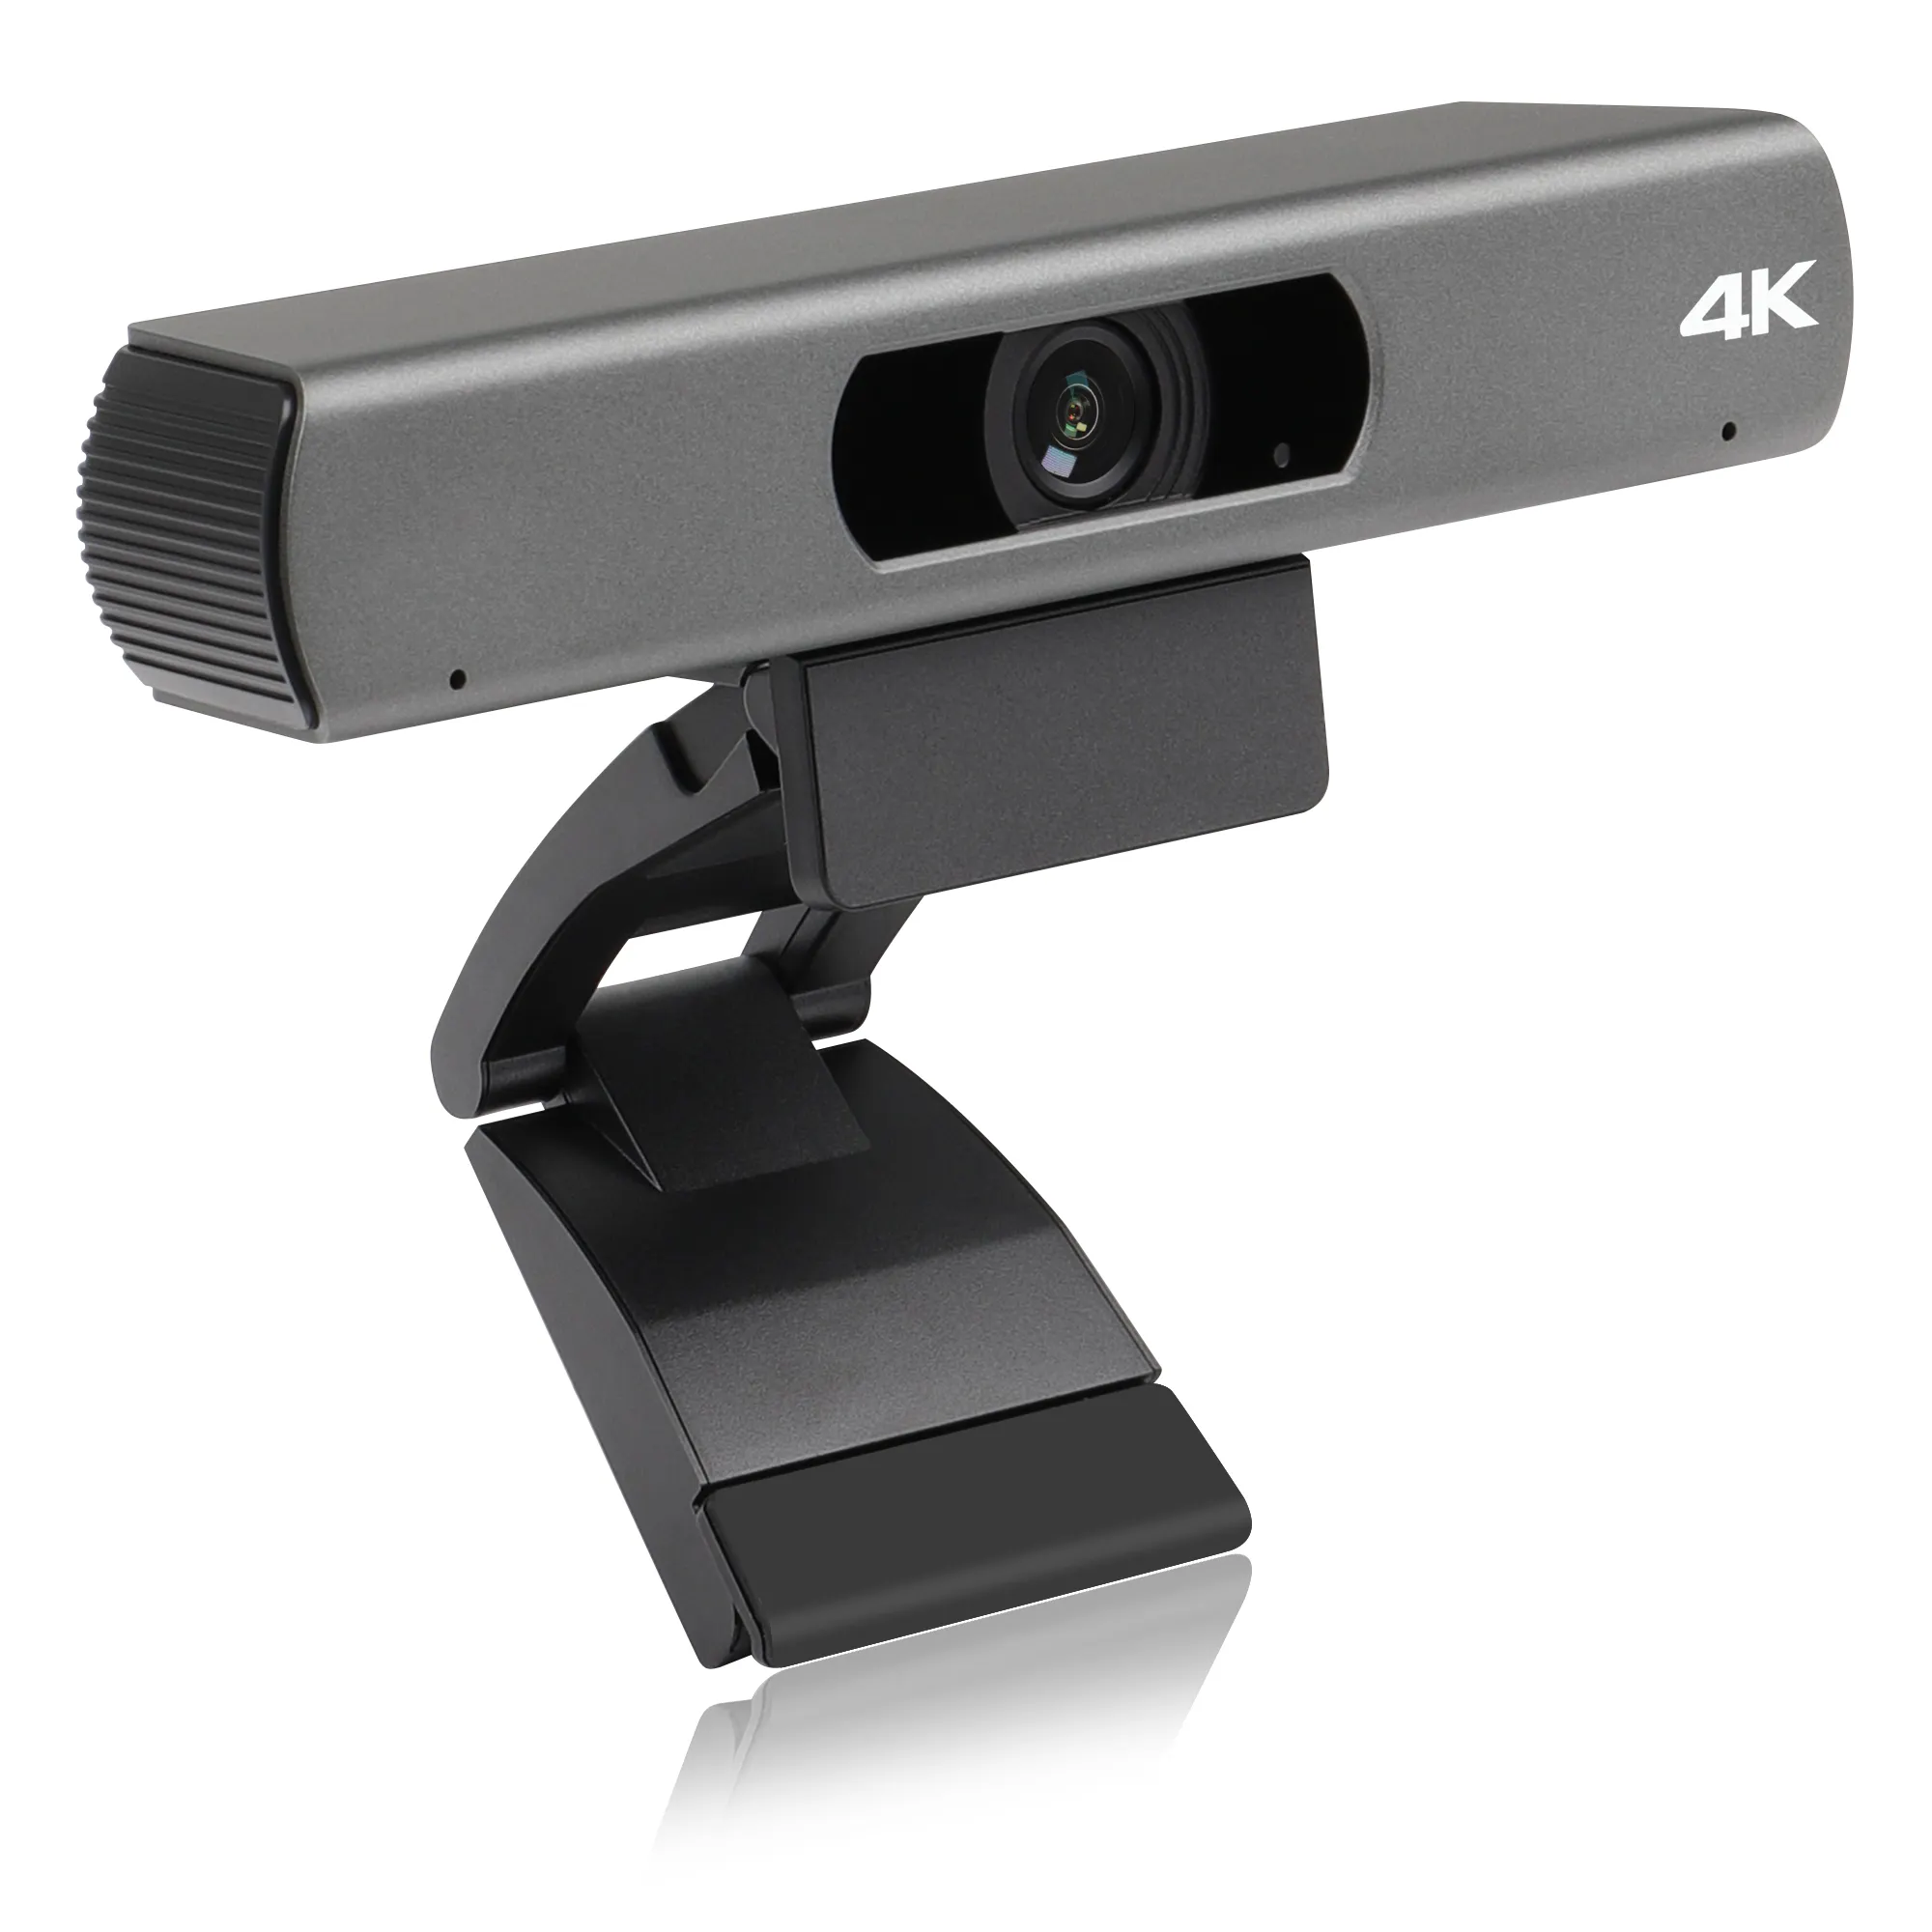 Miglior prezzo di vendita calda originale fabbrica oem odm 4K FMK1700HDMI Auto-Framing microfono incorporato 4K webcam